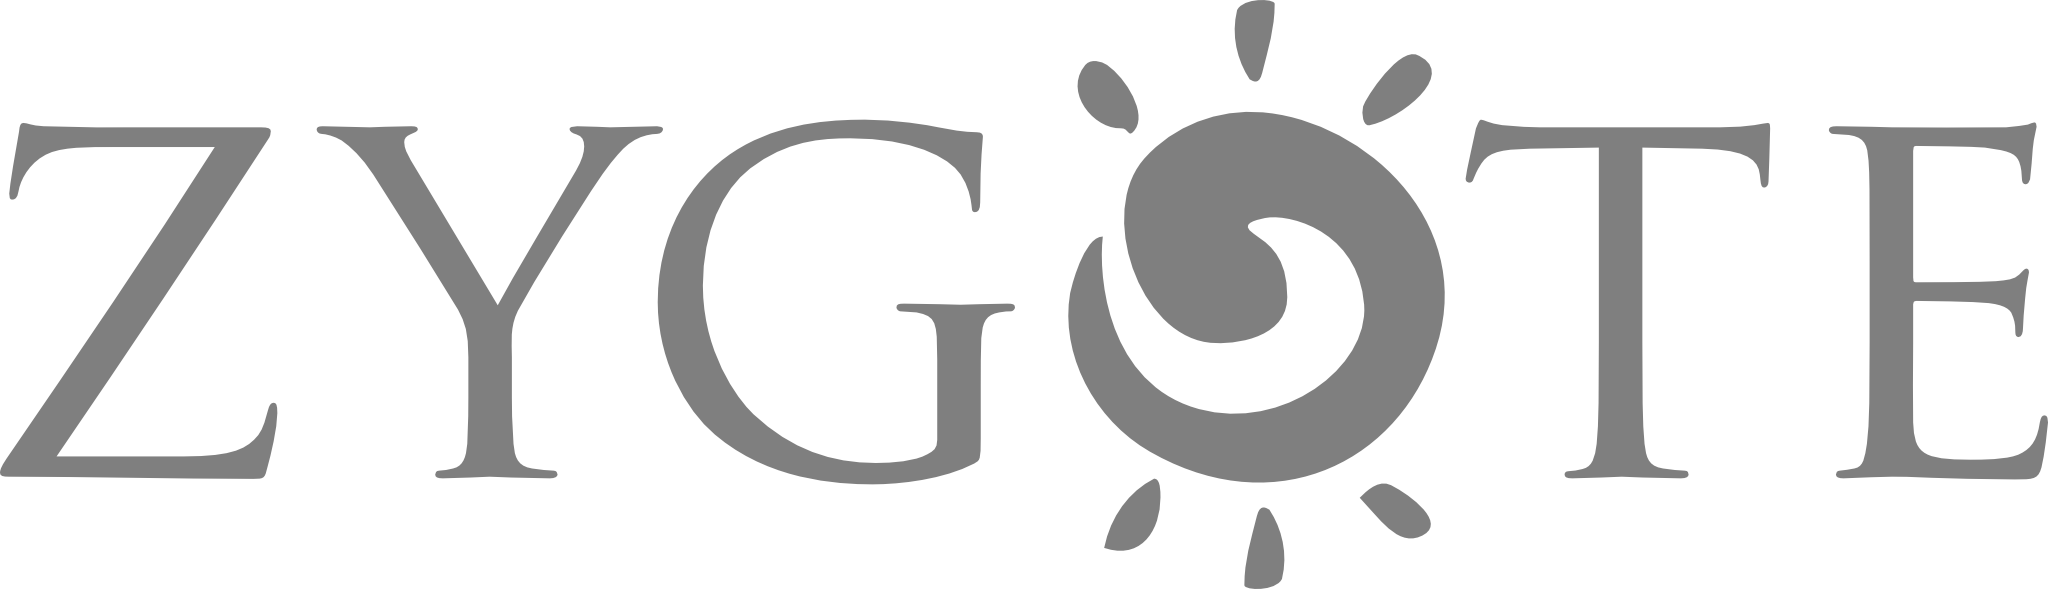 Zygote Logo